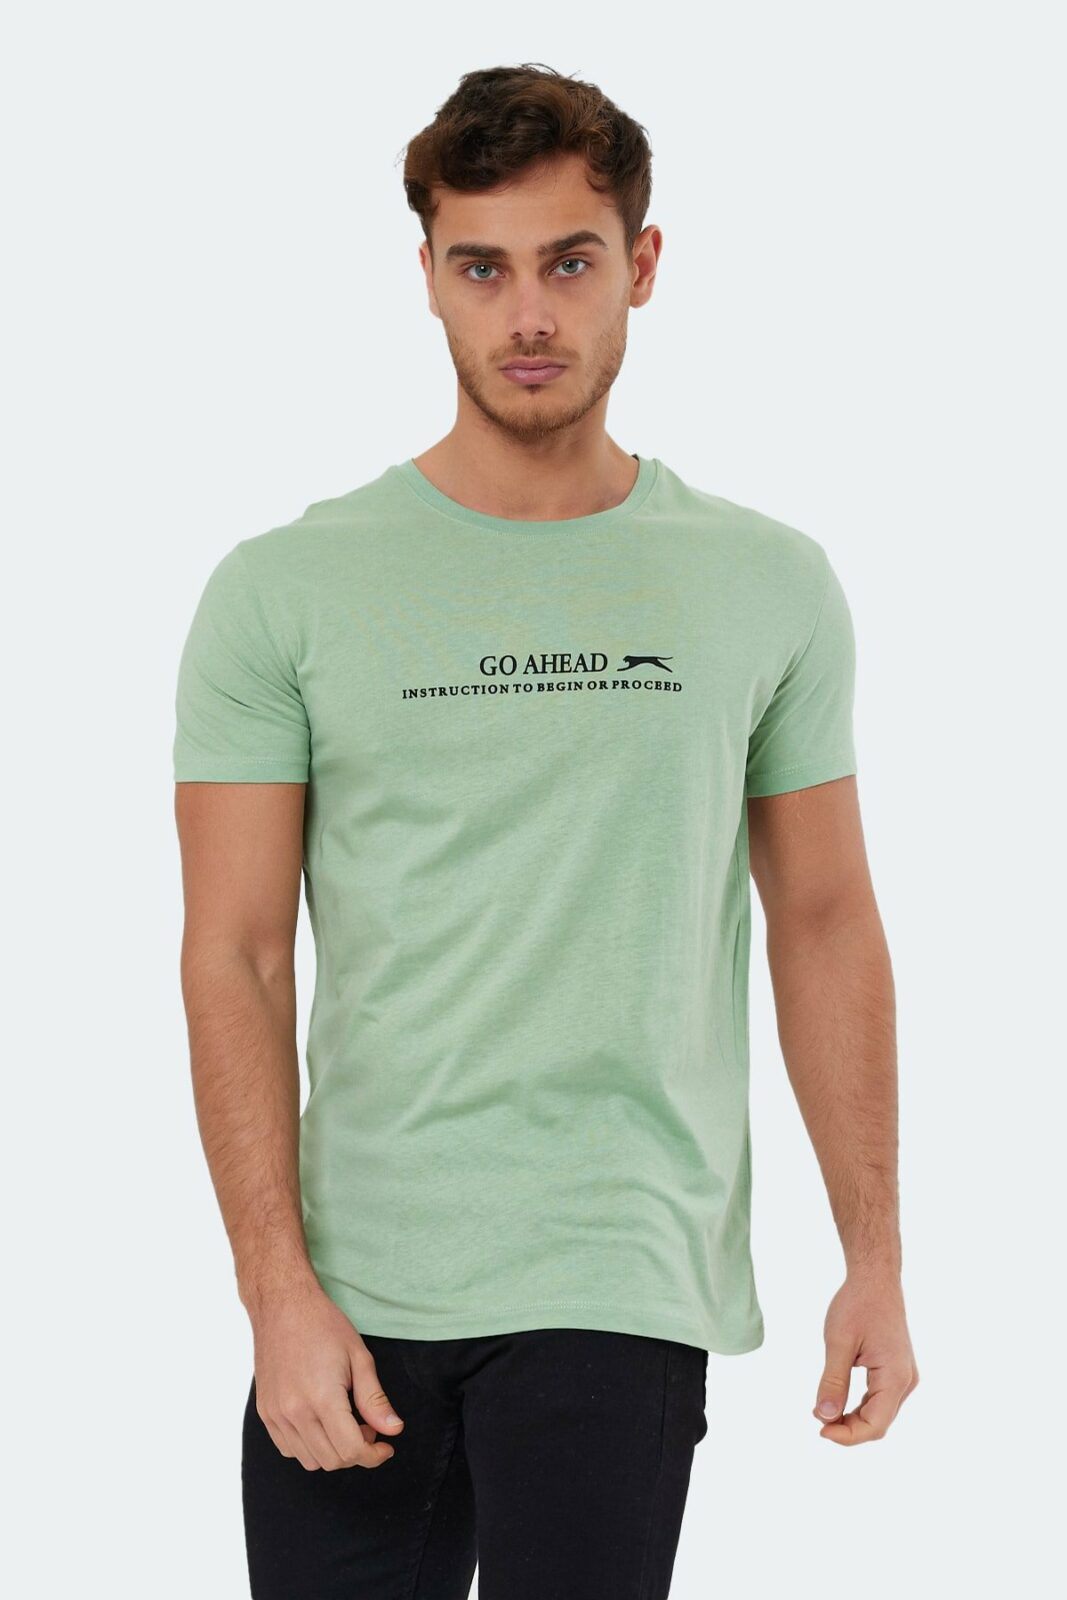 Slazenger T-Shirt - Green -